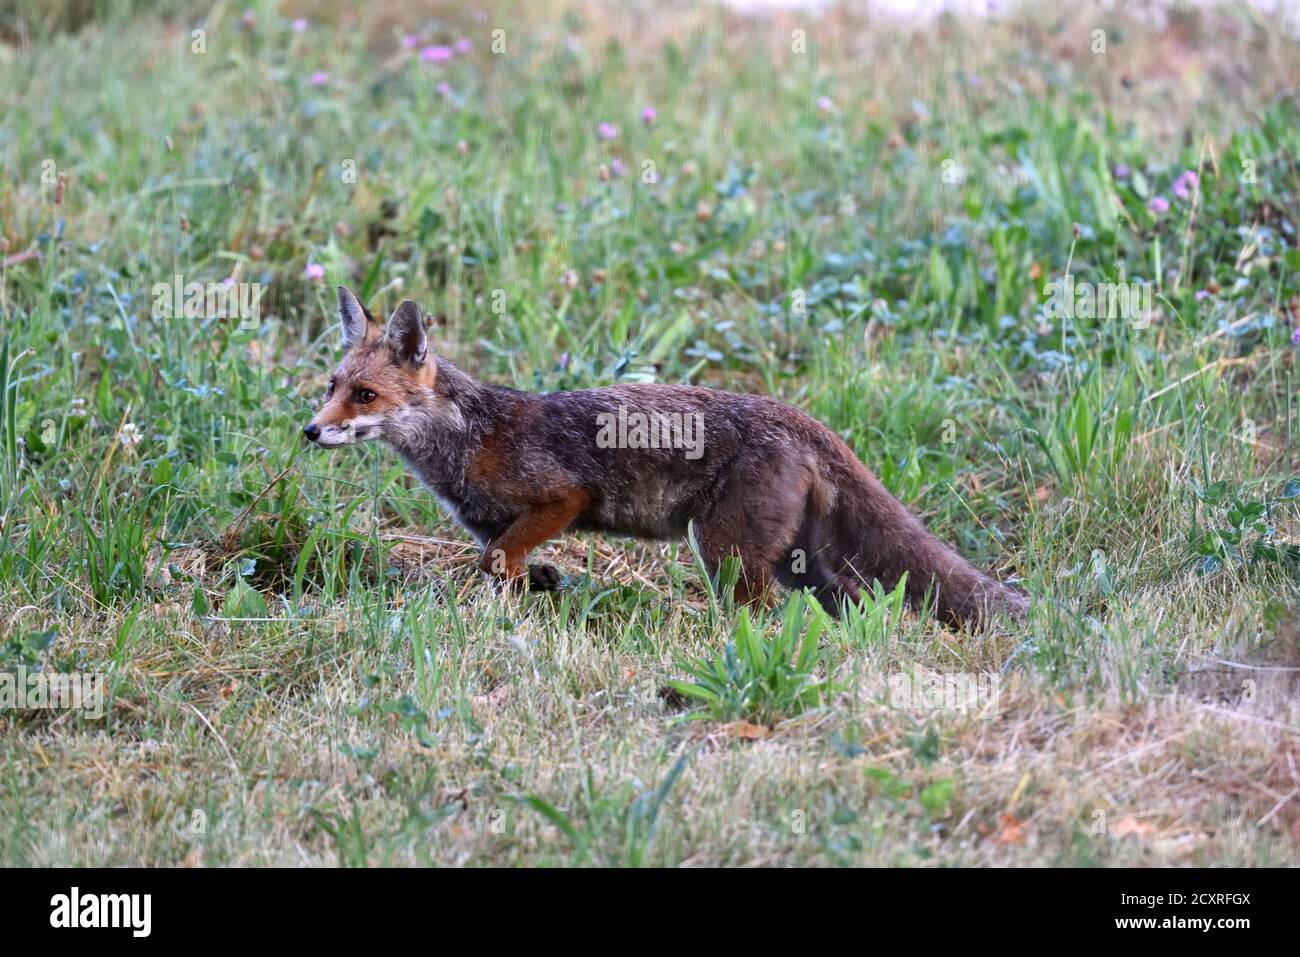 Skulking Red Fox or Alert Red Fox, Vulpes vulpes Stock Photo